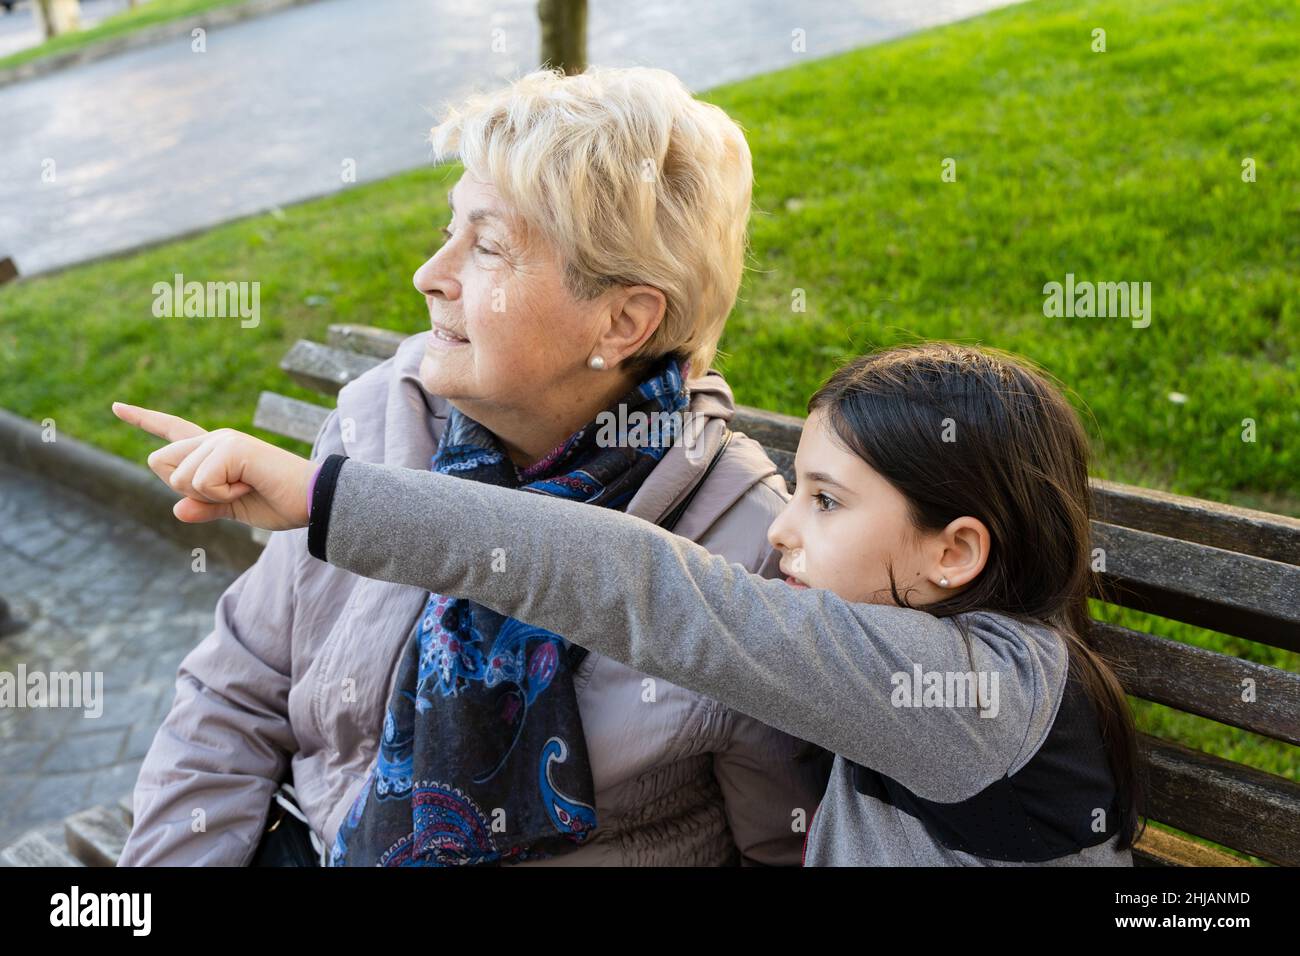 Petite fille pointant avec le doigt et grand-mère regardant dans cette direction. Femme aînée assise sur le banc du parc avec la petite-fille. Curiosité, découverte Banque D'Images